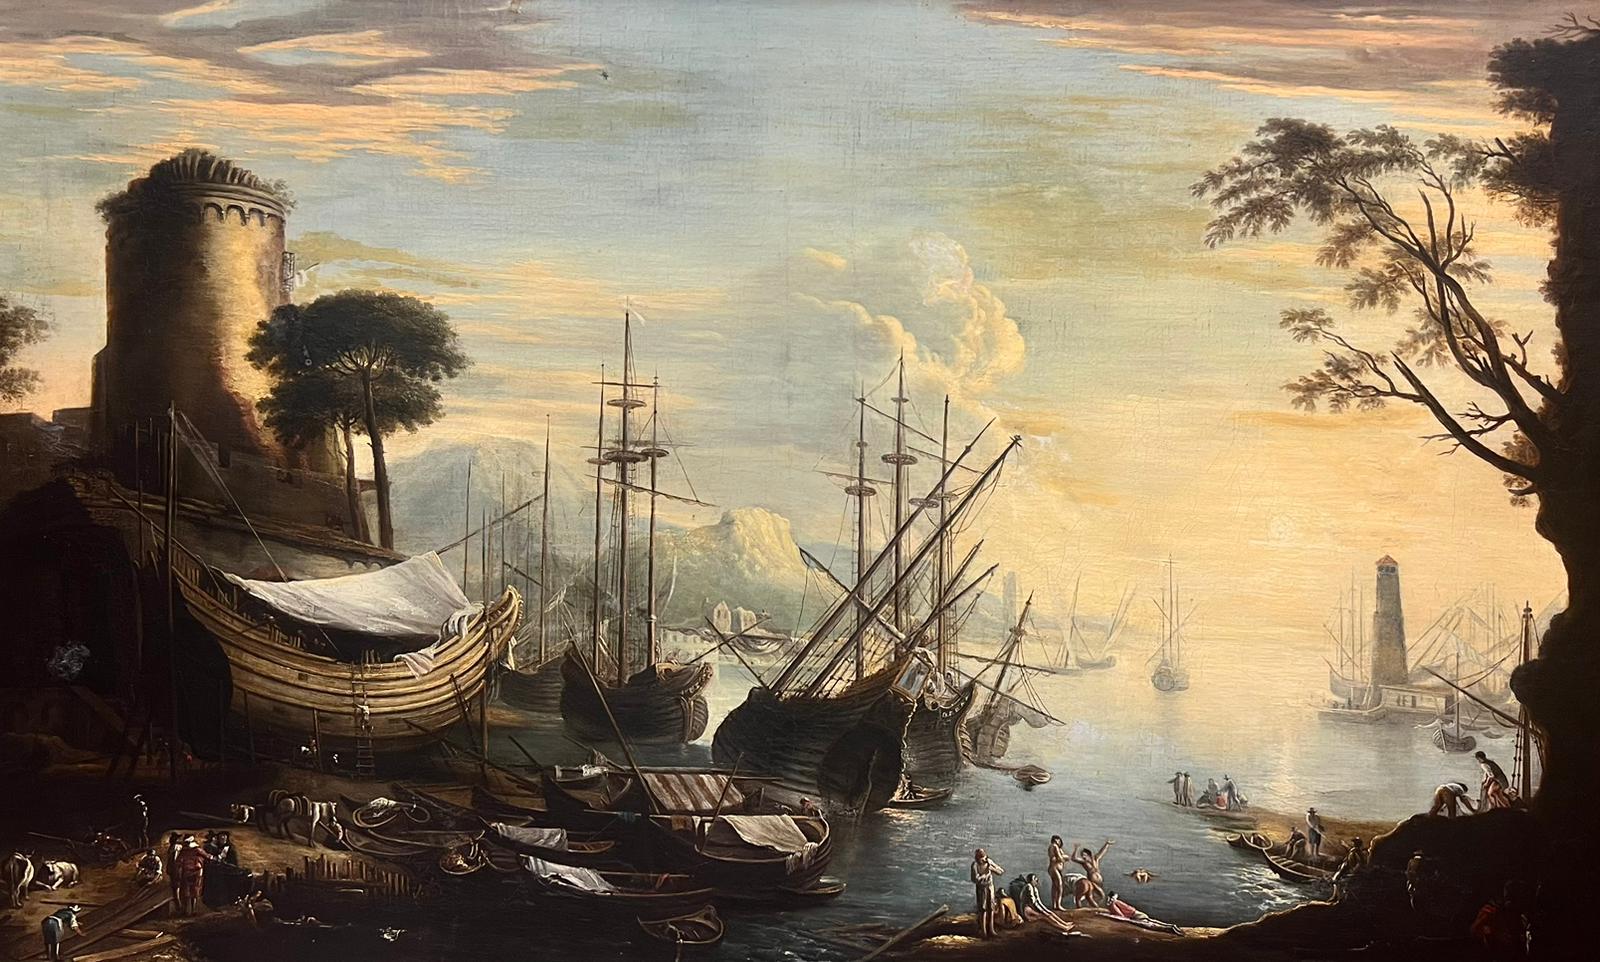 Grande peinture à l'huile italienne du 18ème siècle représentant un navire marchand et de nombreuses figures